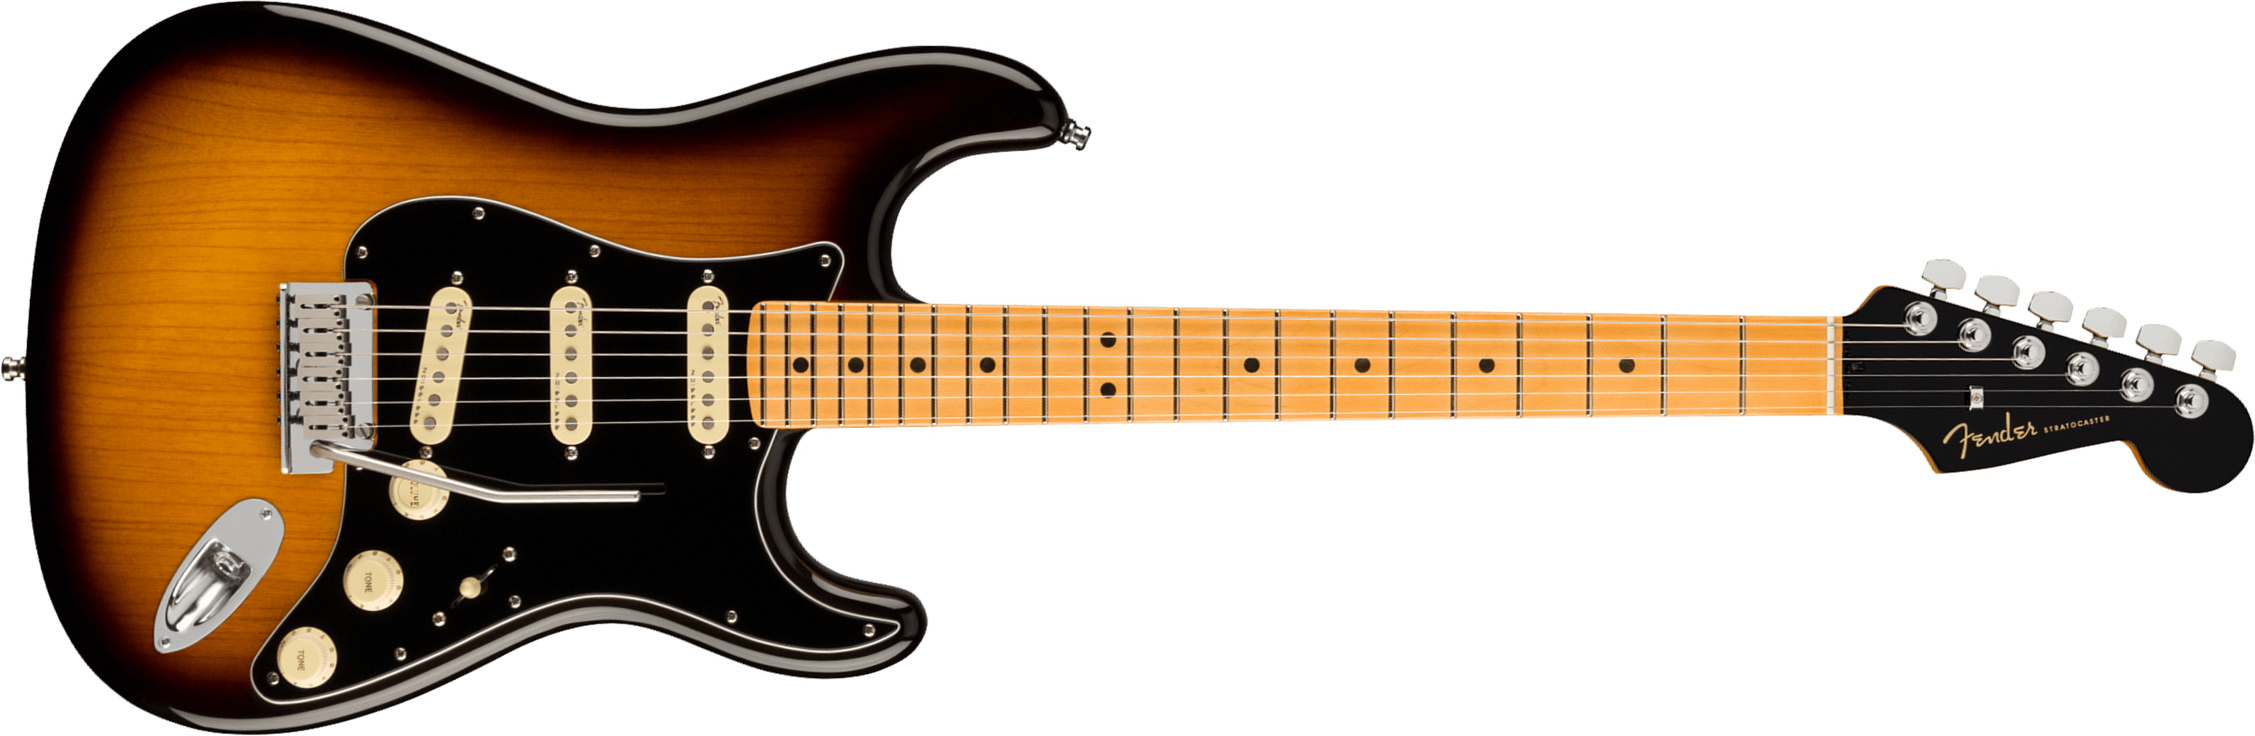 Fender Strat American Ultra Luxe Usa Mn +etui - 2-color Sunburst - Guitarra eléctrica con forma de str. - Main picture